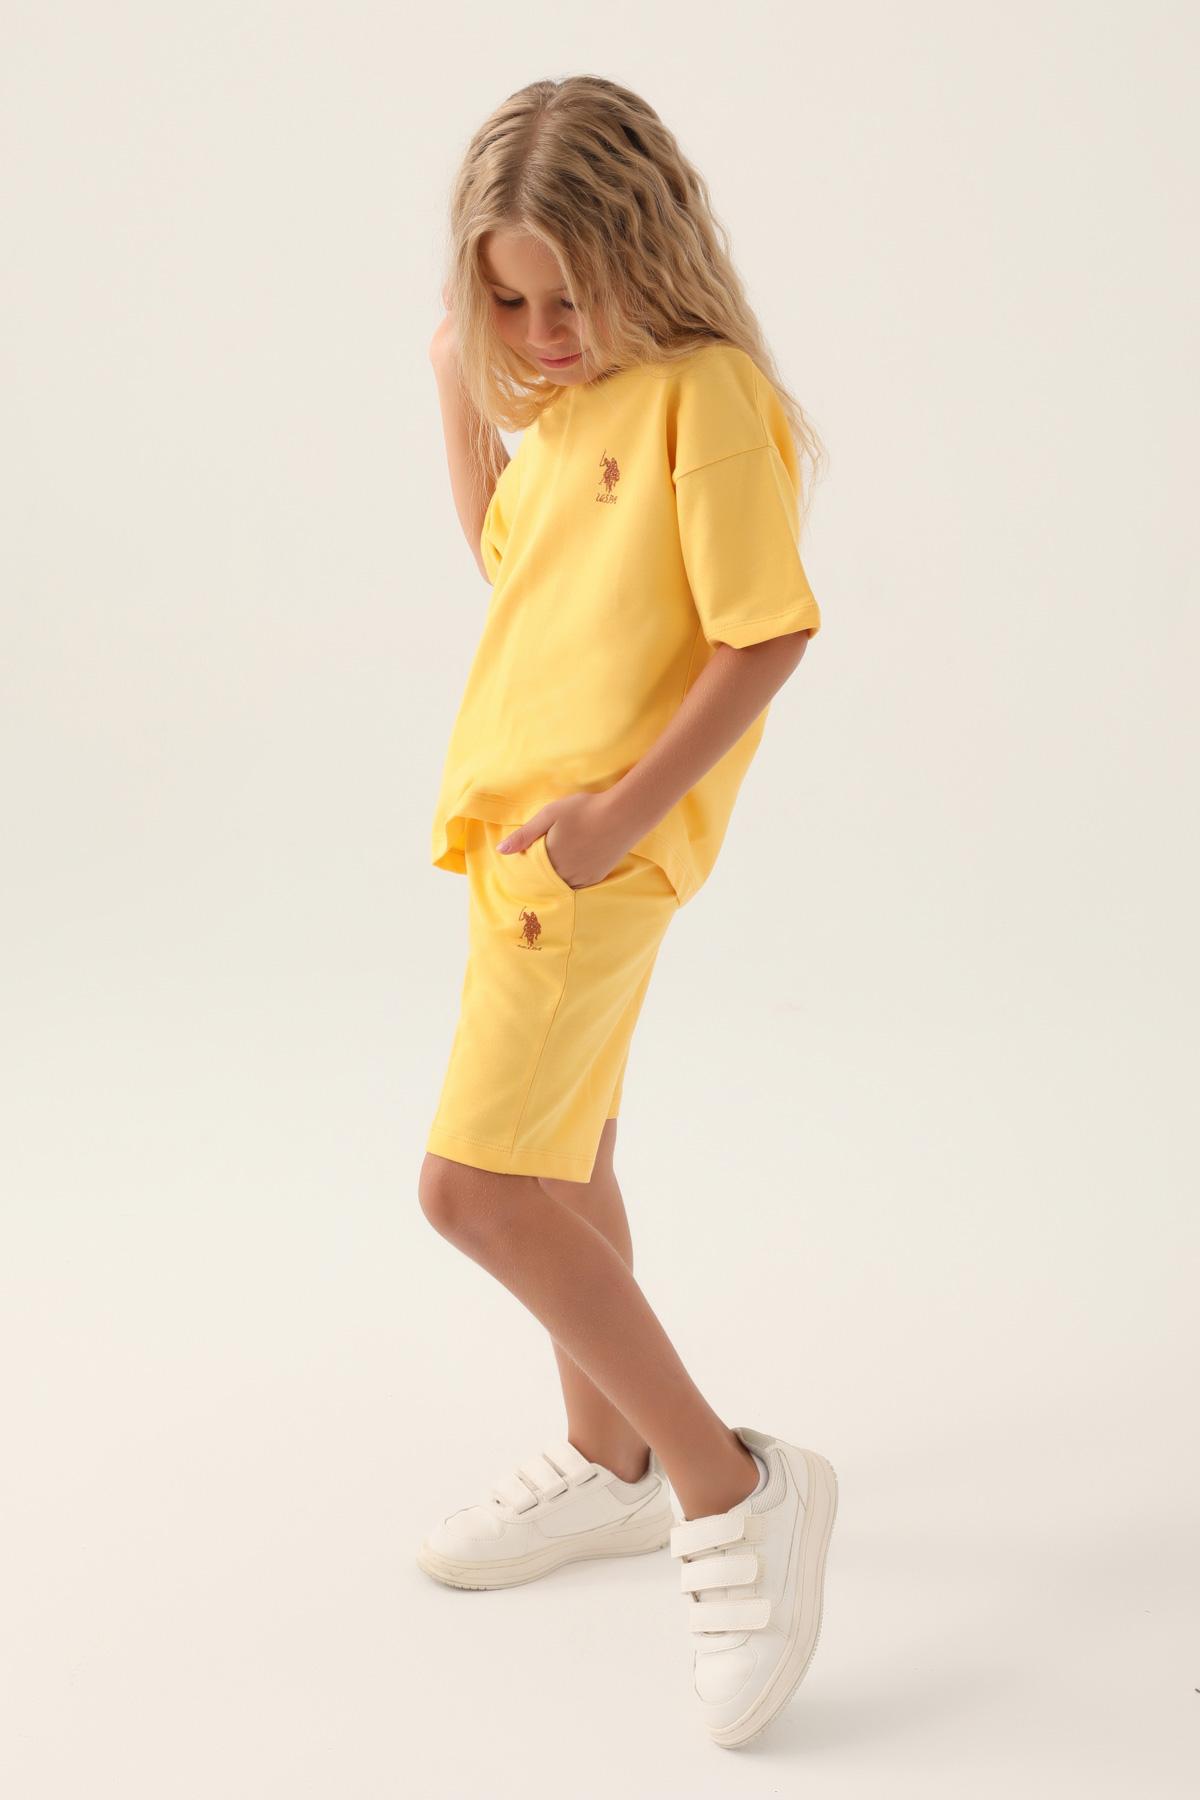 Selected image for U.S. Polo Assn. Komplet za devojčice US1822-4, Žuti